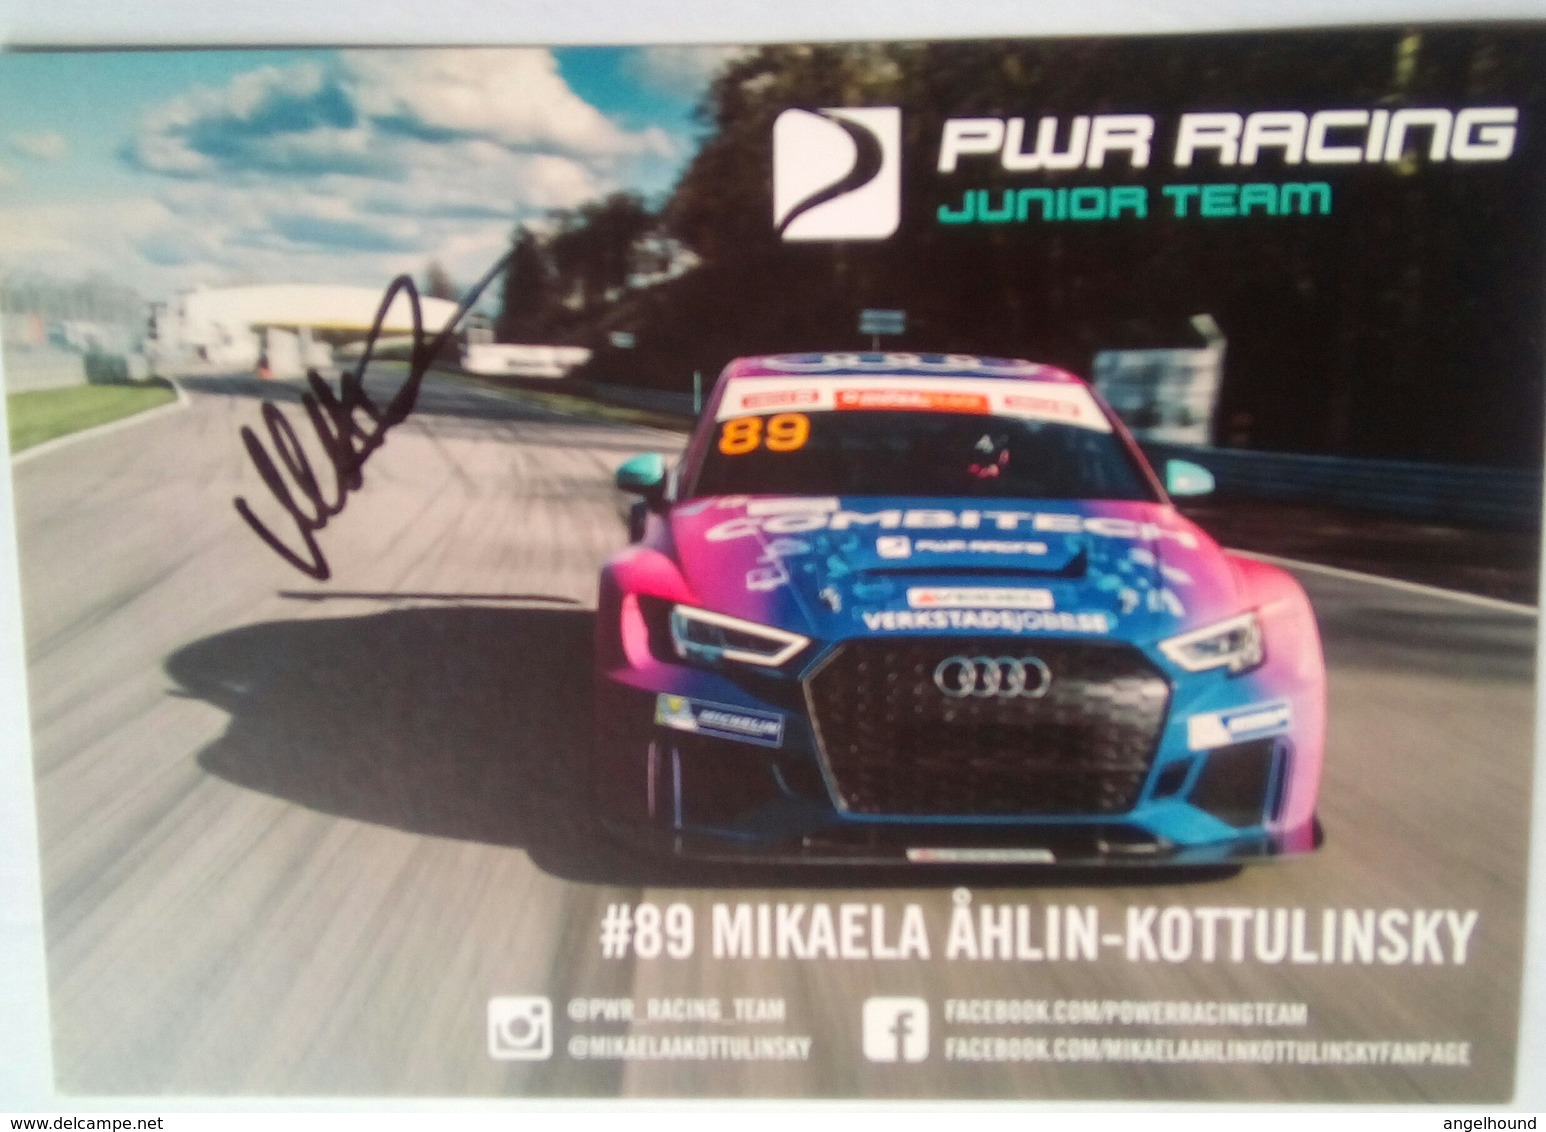 Mikaaela Ahlin Kottulinsky Signed Card - Autogramme